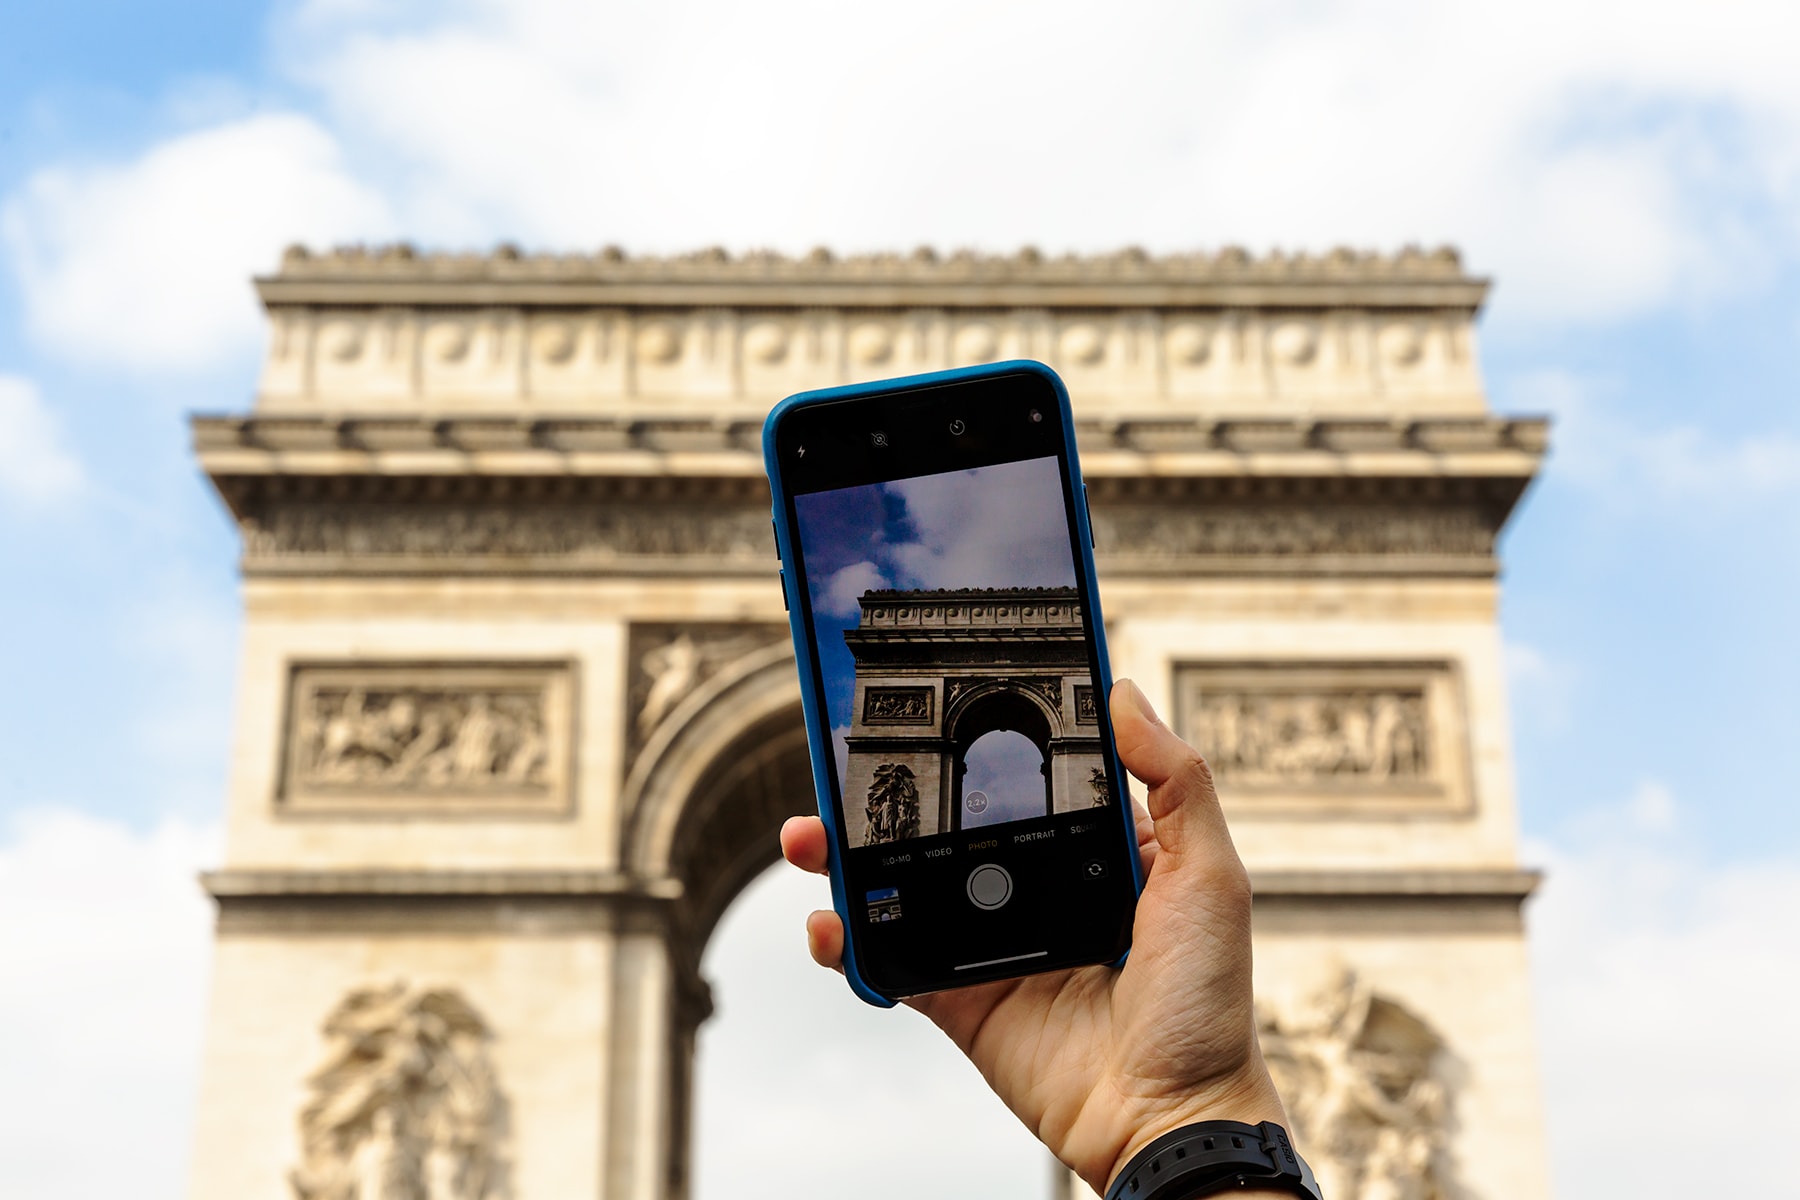 巴黎實測 iPhone XS Max 攝影功能